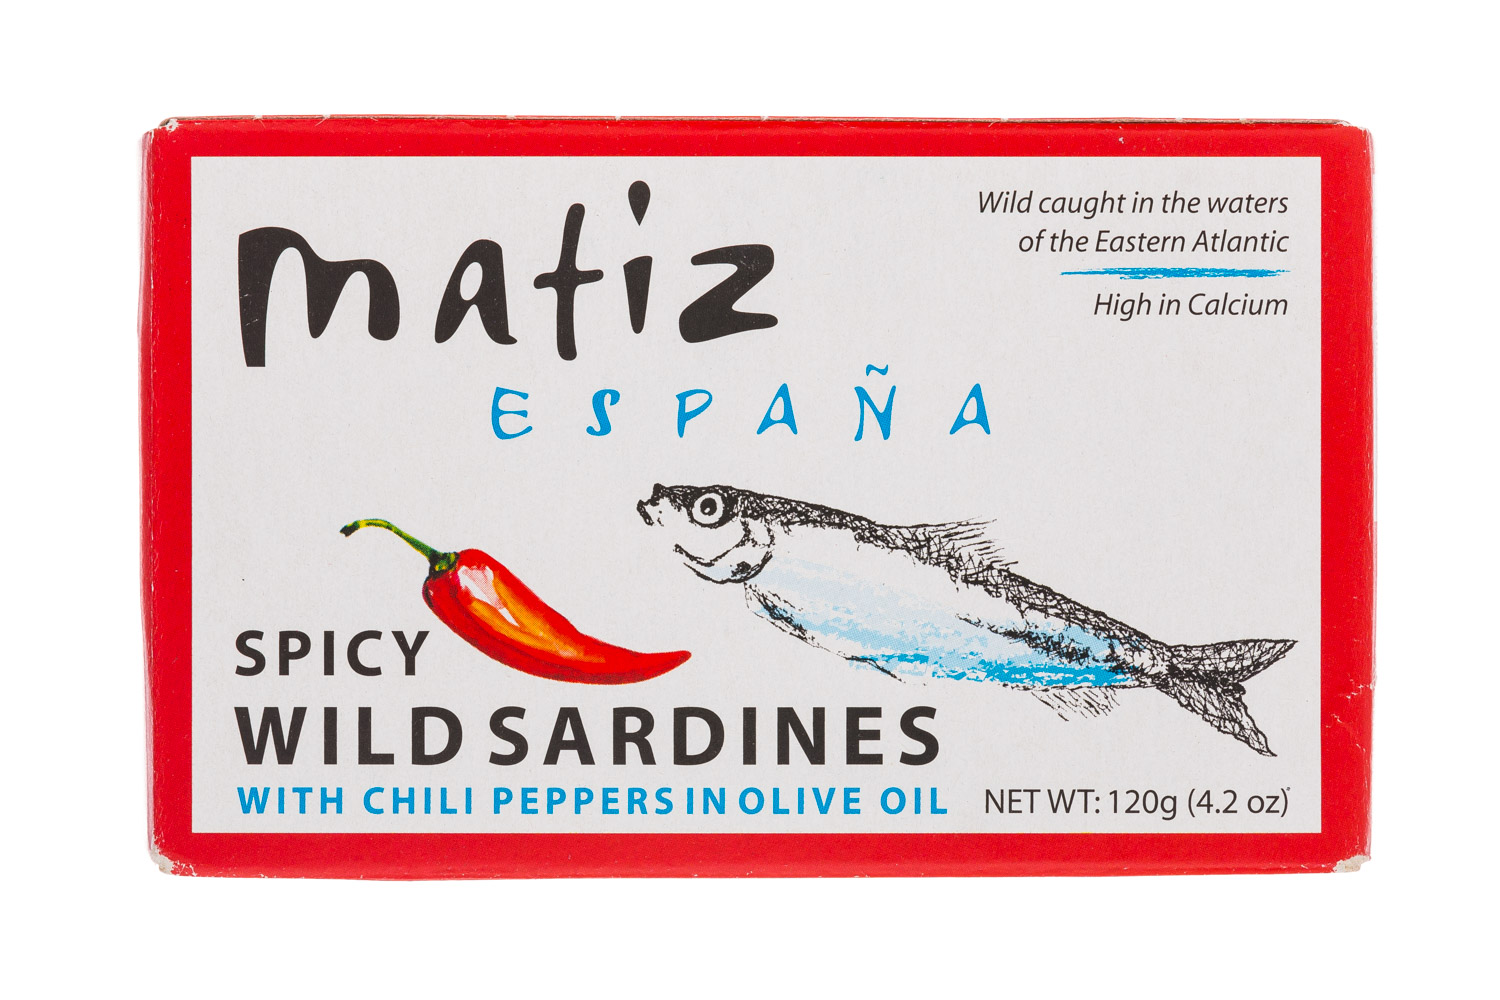 Spicy Wild Sardines